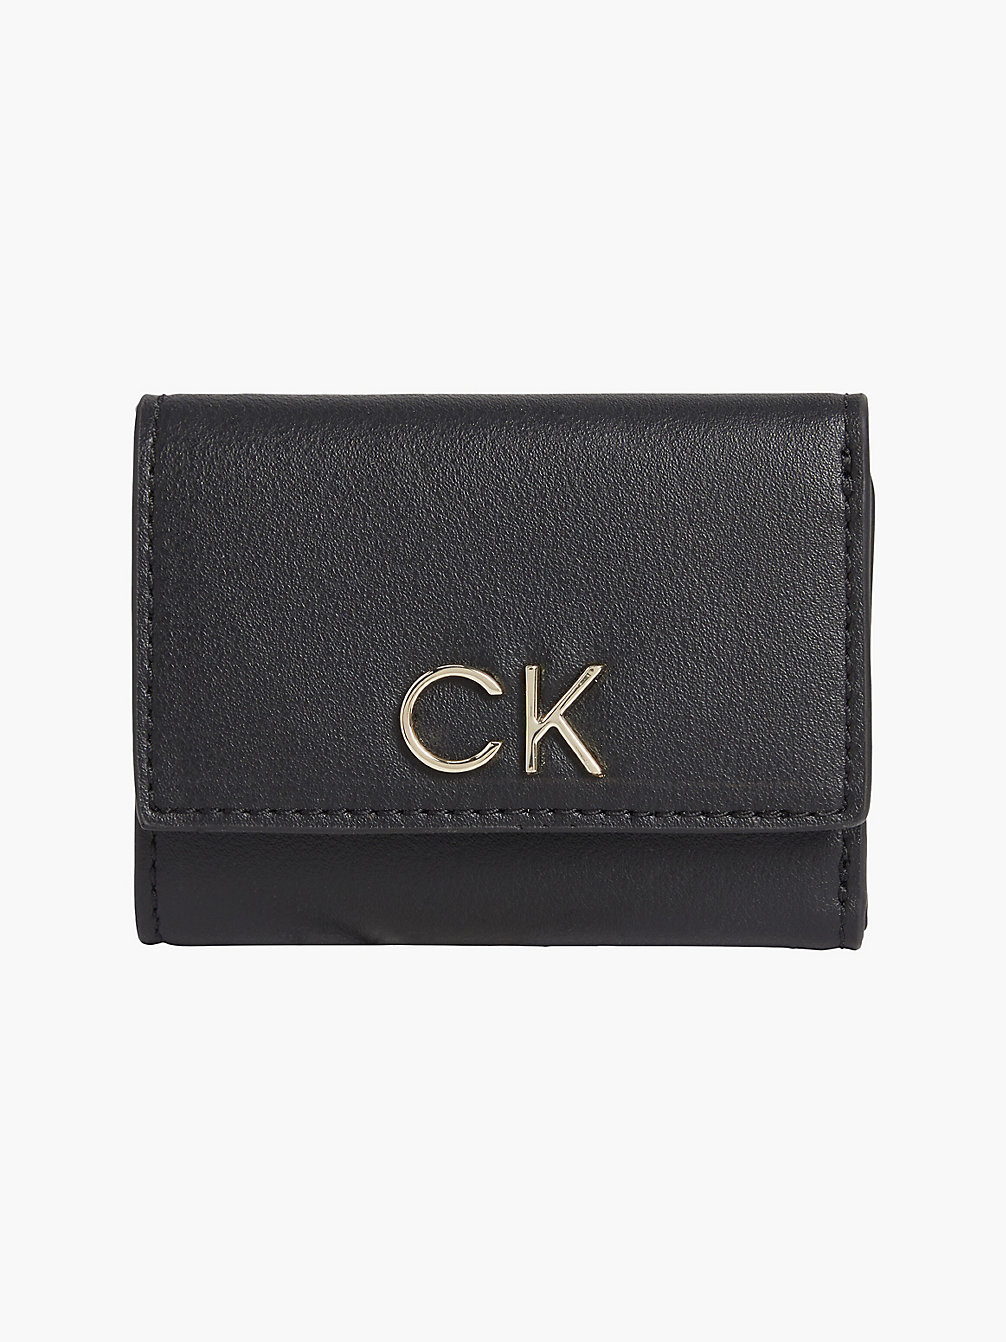 CK BLACK > In Drieën Gevouwen Mini Portemonnee > undefined dames - Calvin Klein